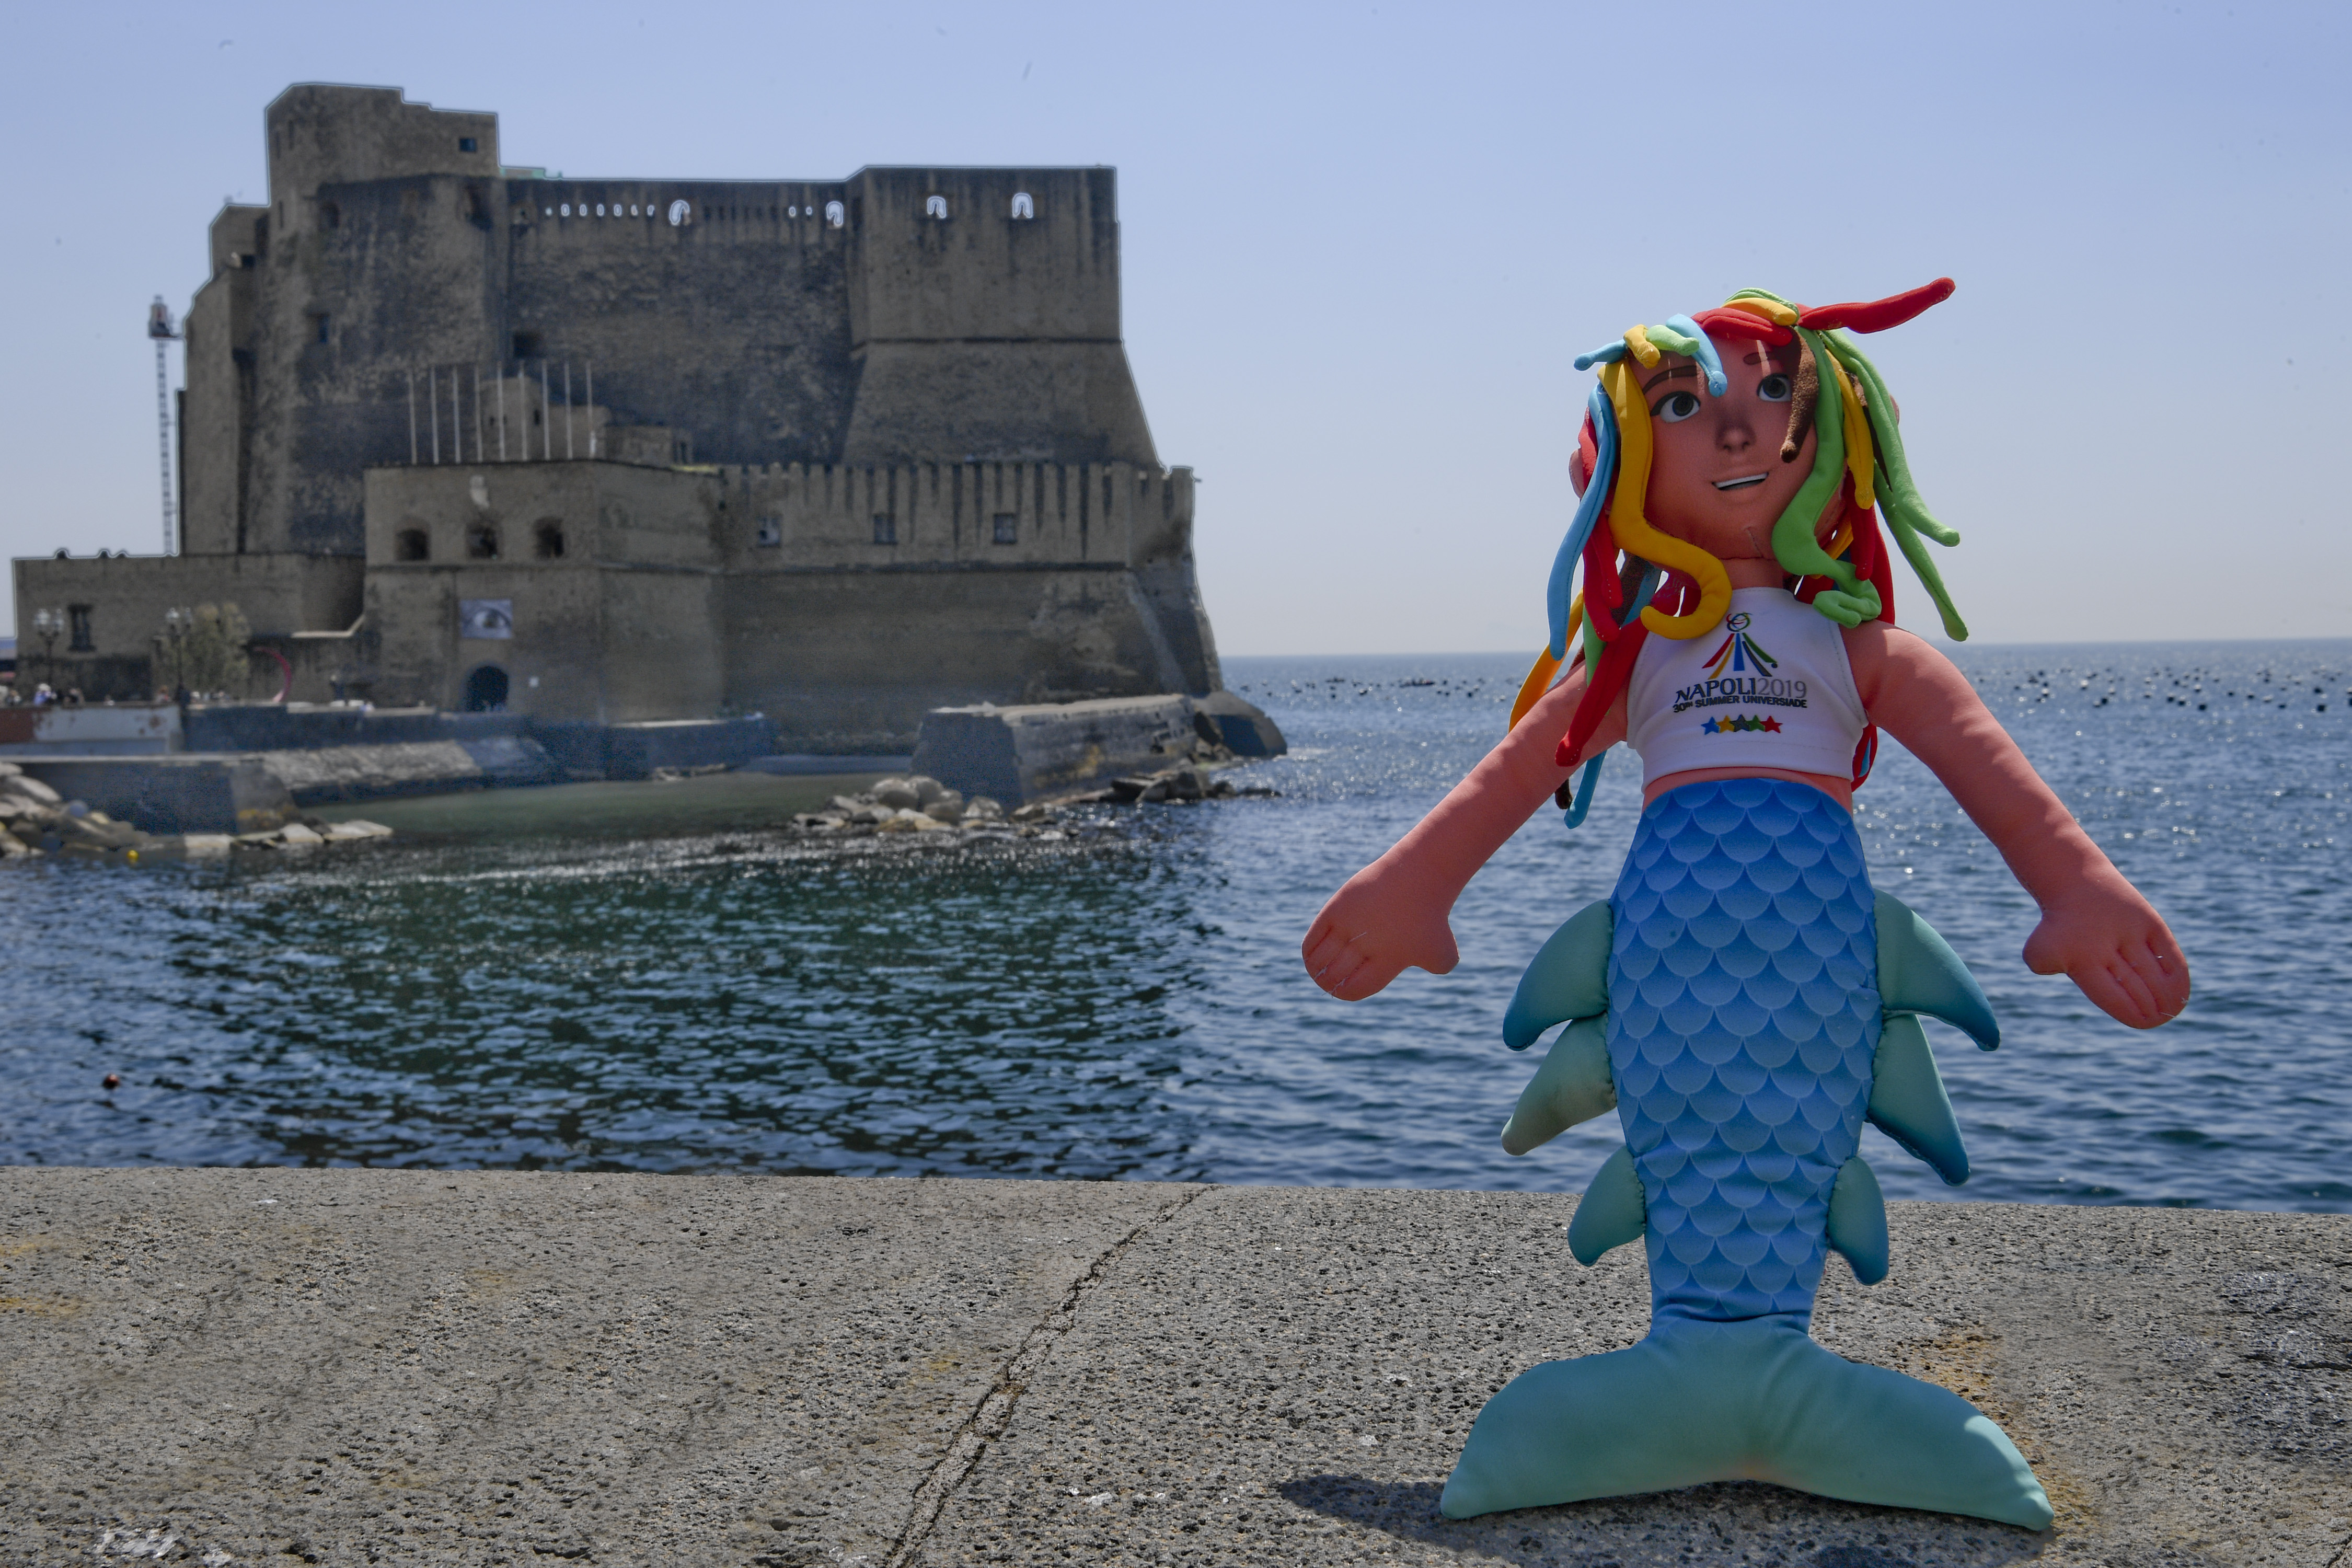 Napoli 2019: the torch & the mascotte of SU